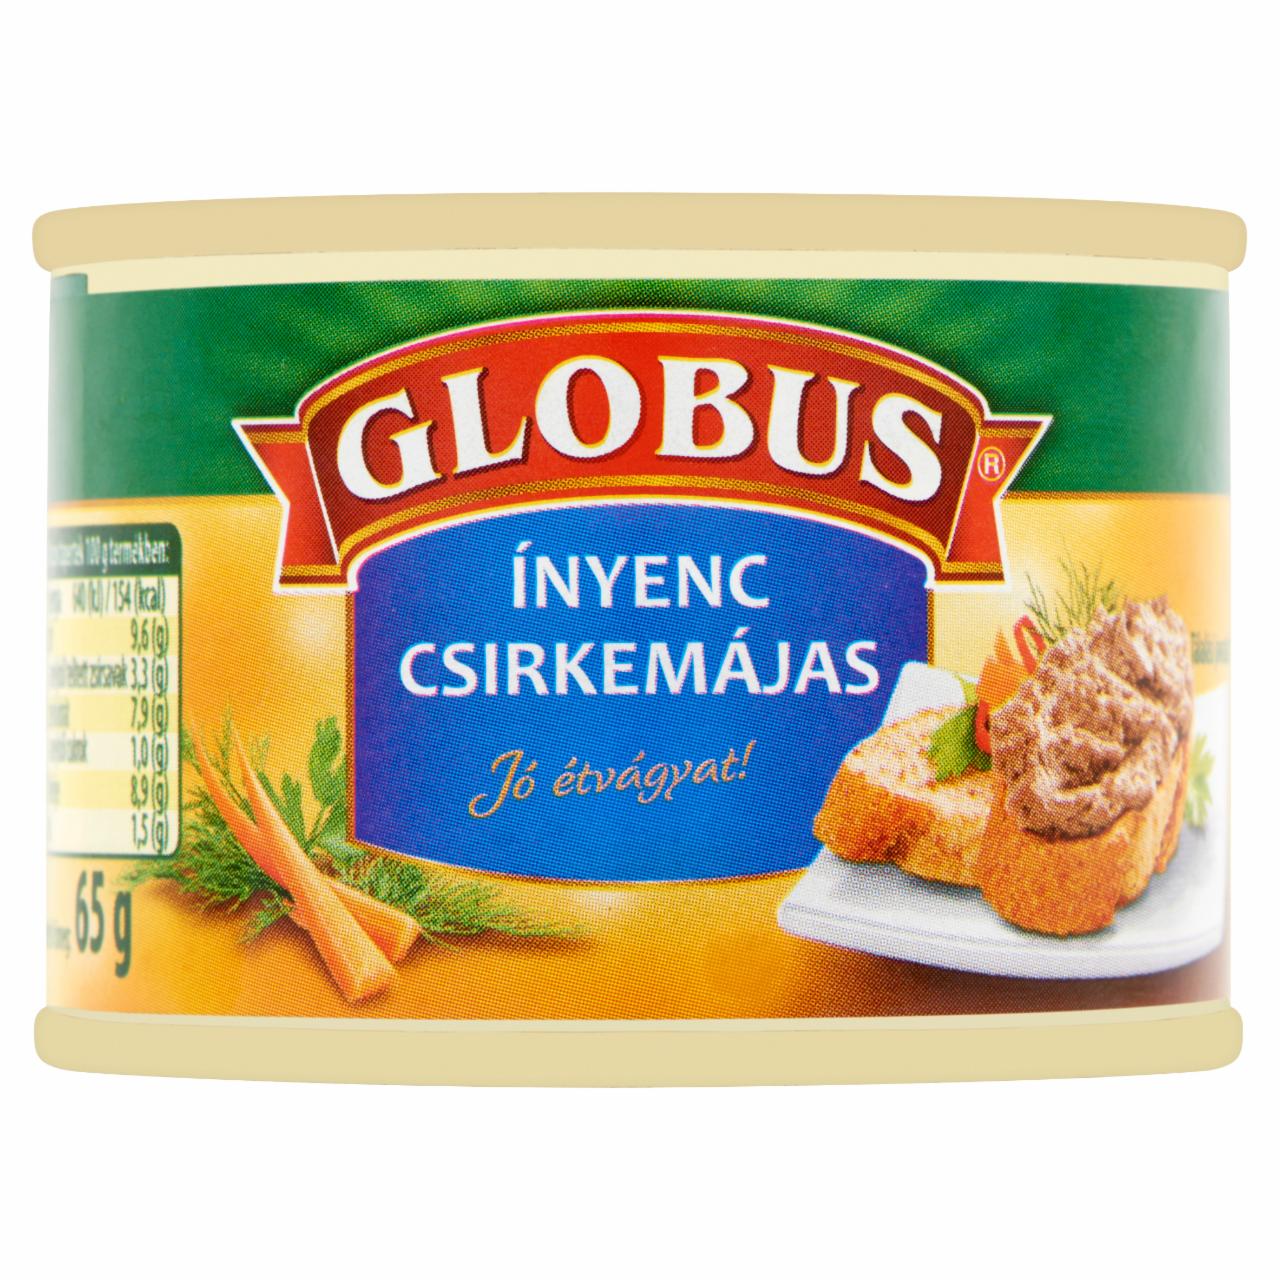 Képek - Globus ínyenc csirkemájas 65 g